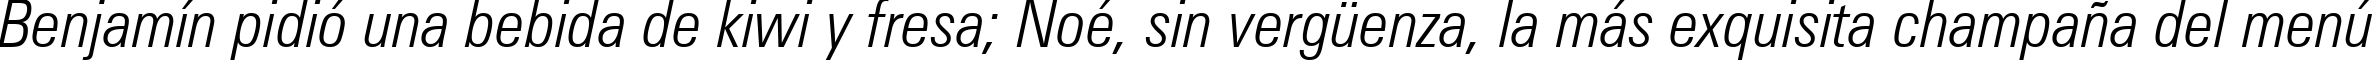 Пример написания шрифтом Zurich Light Condensed Italic BT текста на испанском